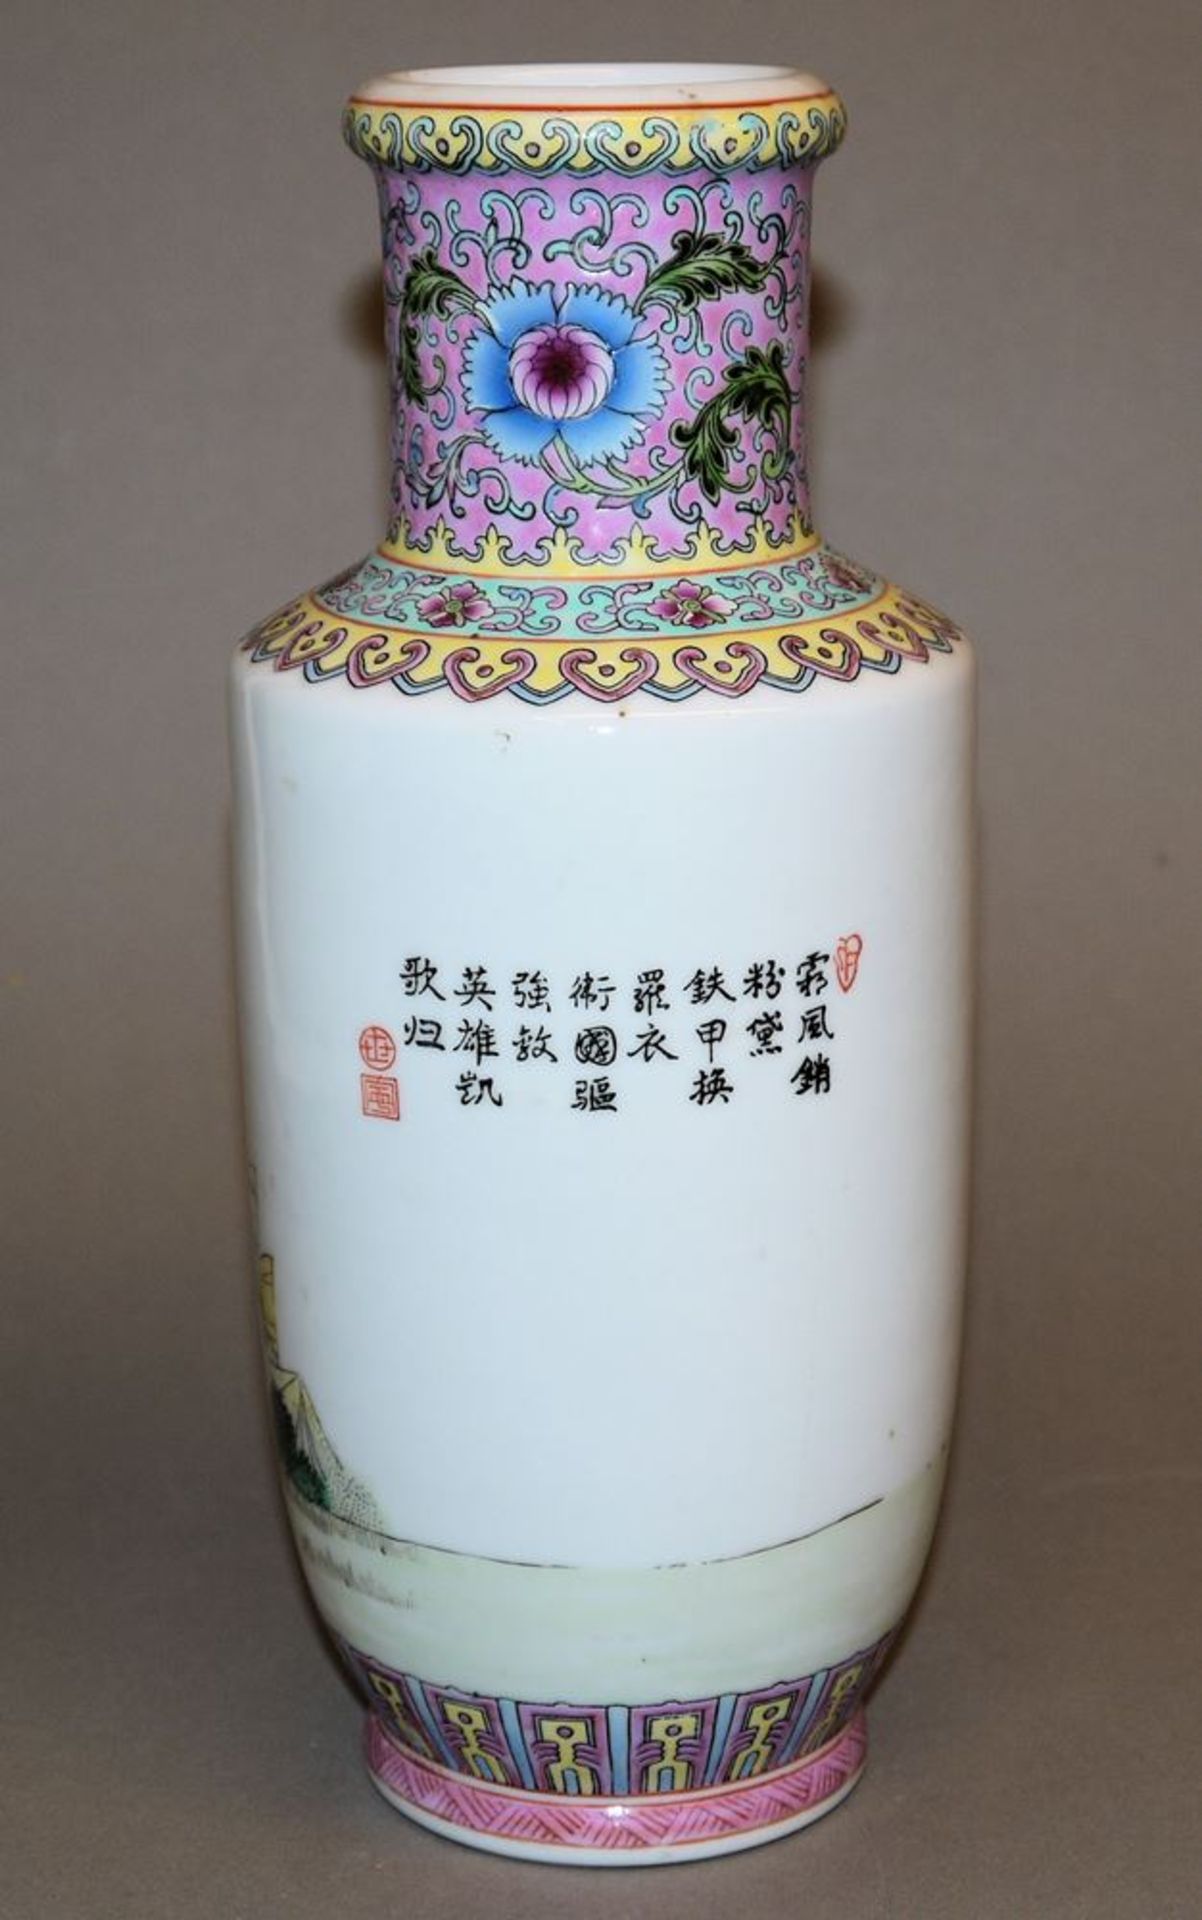 Moderne Rouleau-Vase mit Kriegerinnen aus Jingdezhen, China 20. Jh. - Image 2 of 3